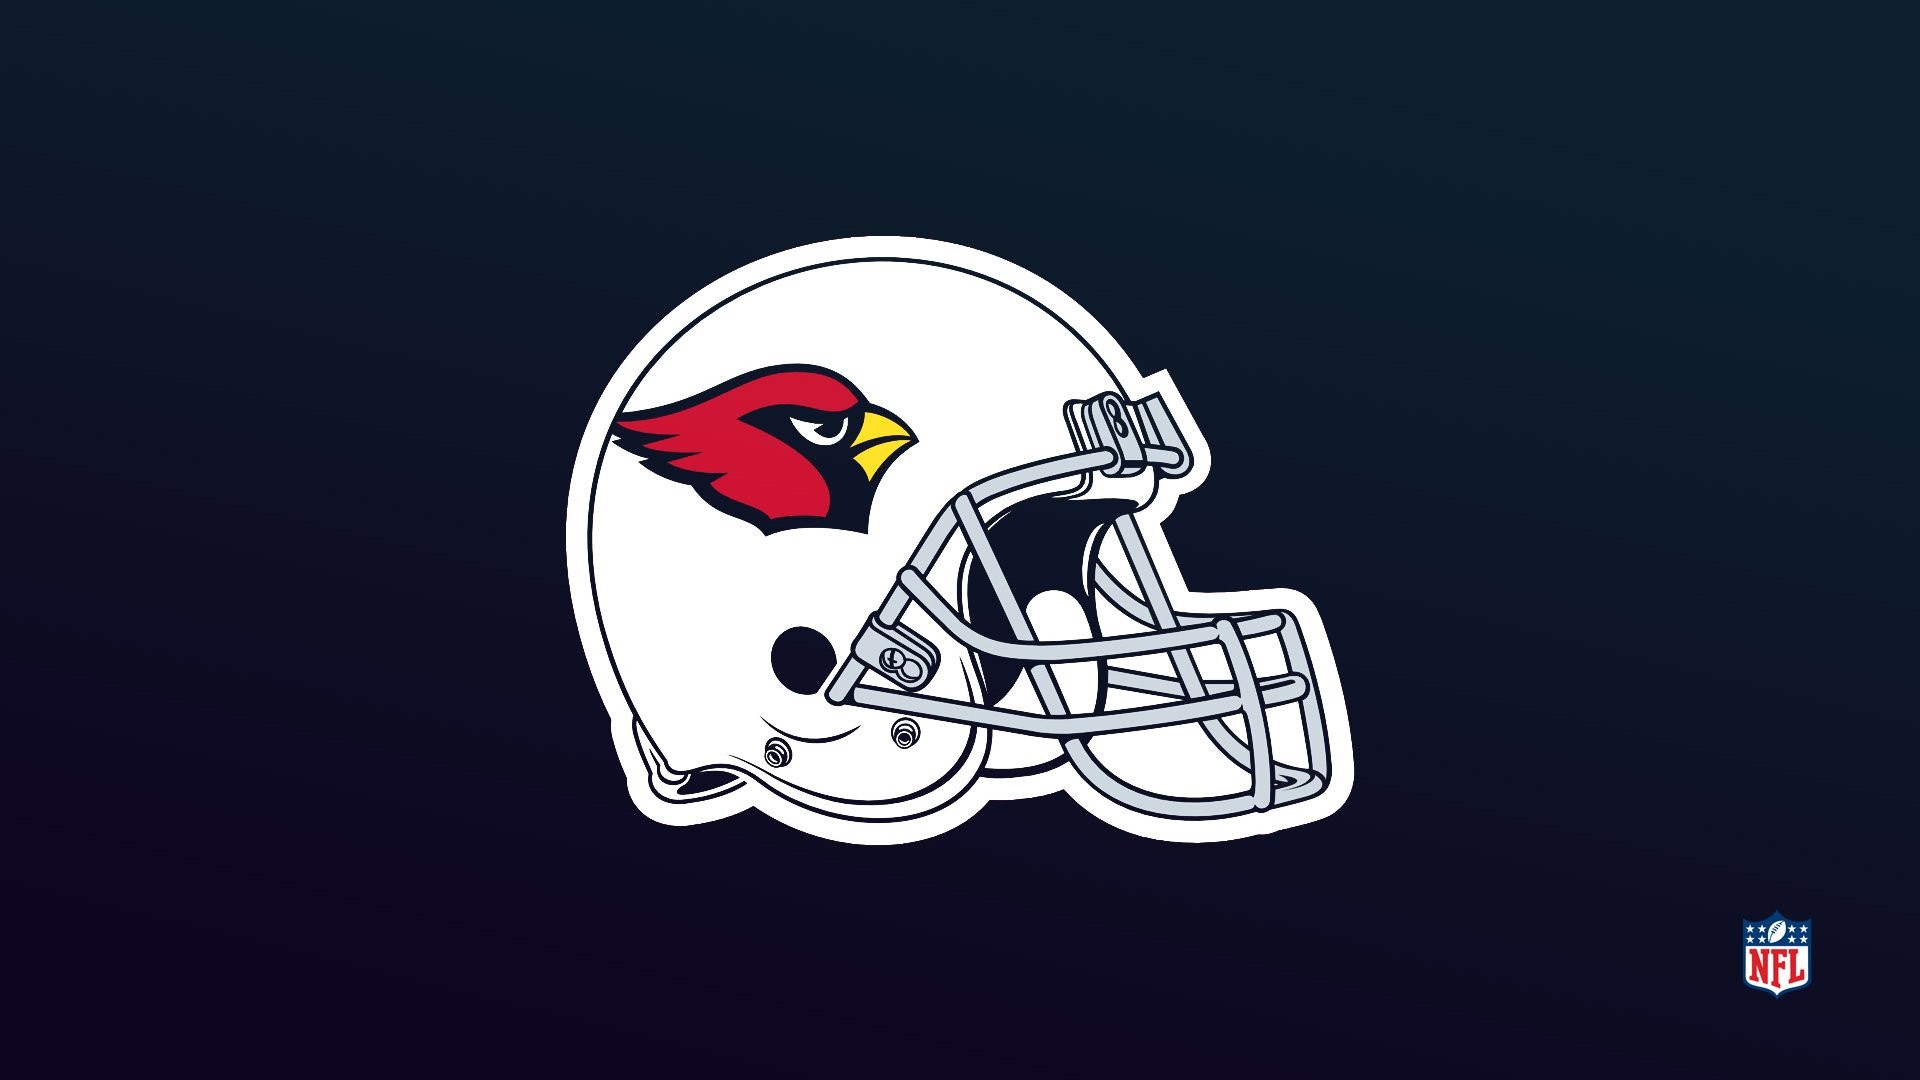 Arizona Cardinals Wallpaper Image